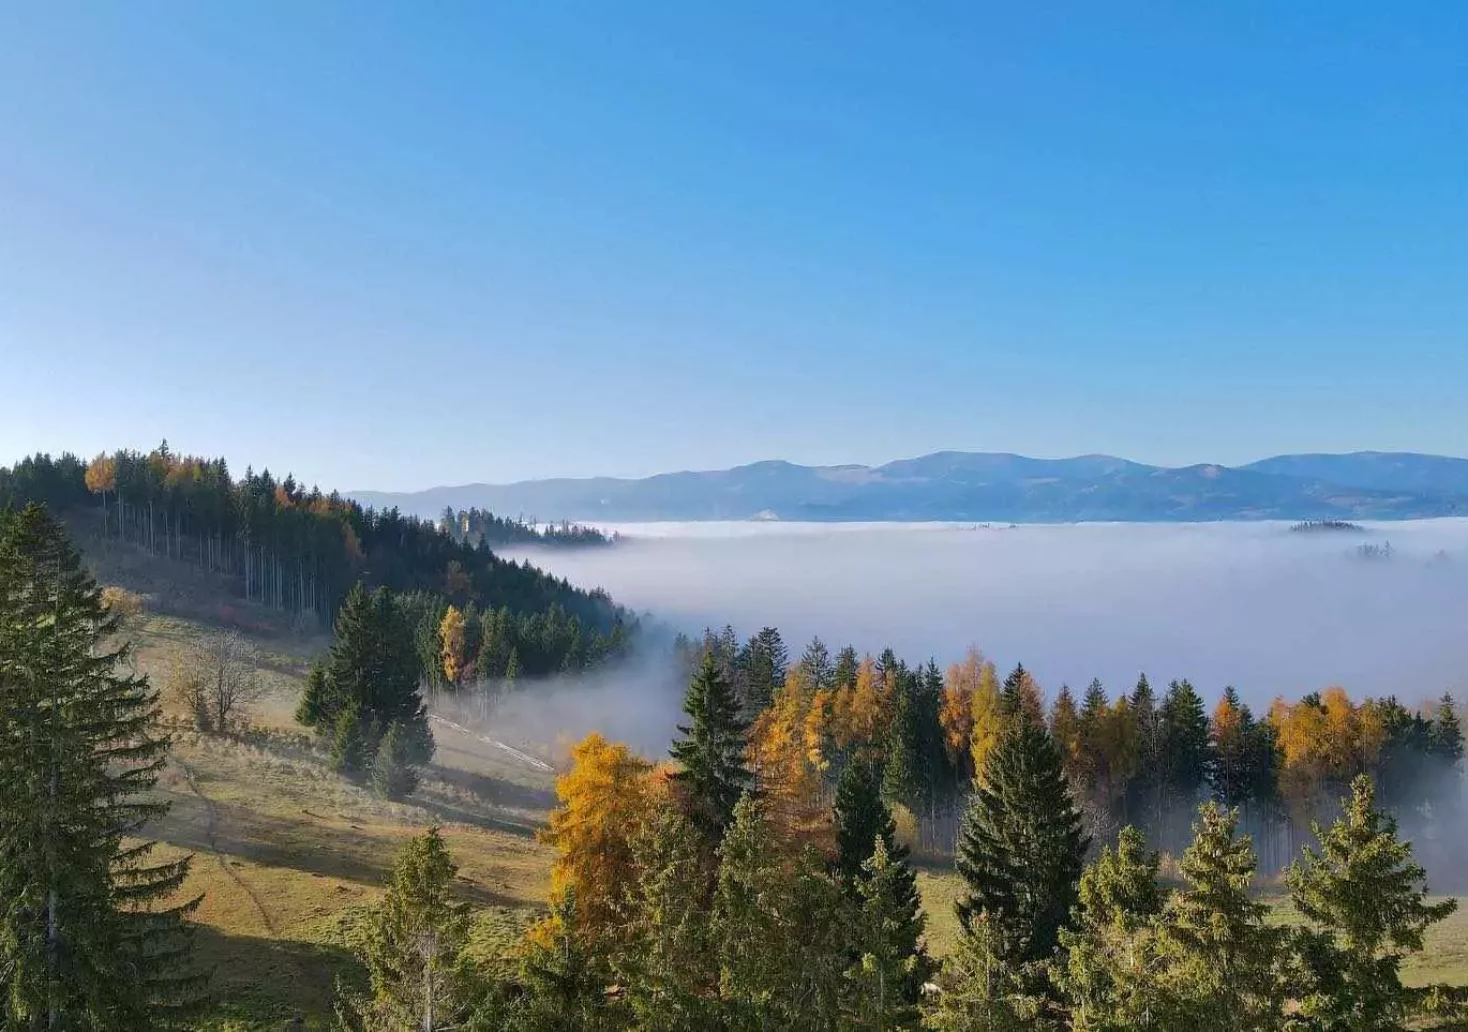 Bild auf 5min.at zeigt eine Berglandschaft, im Tal liegt Nebel.